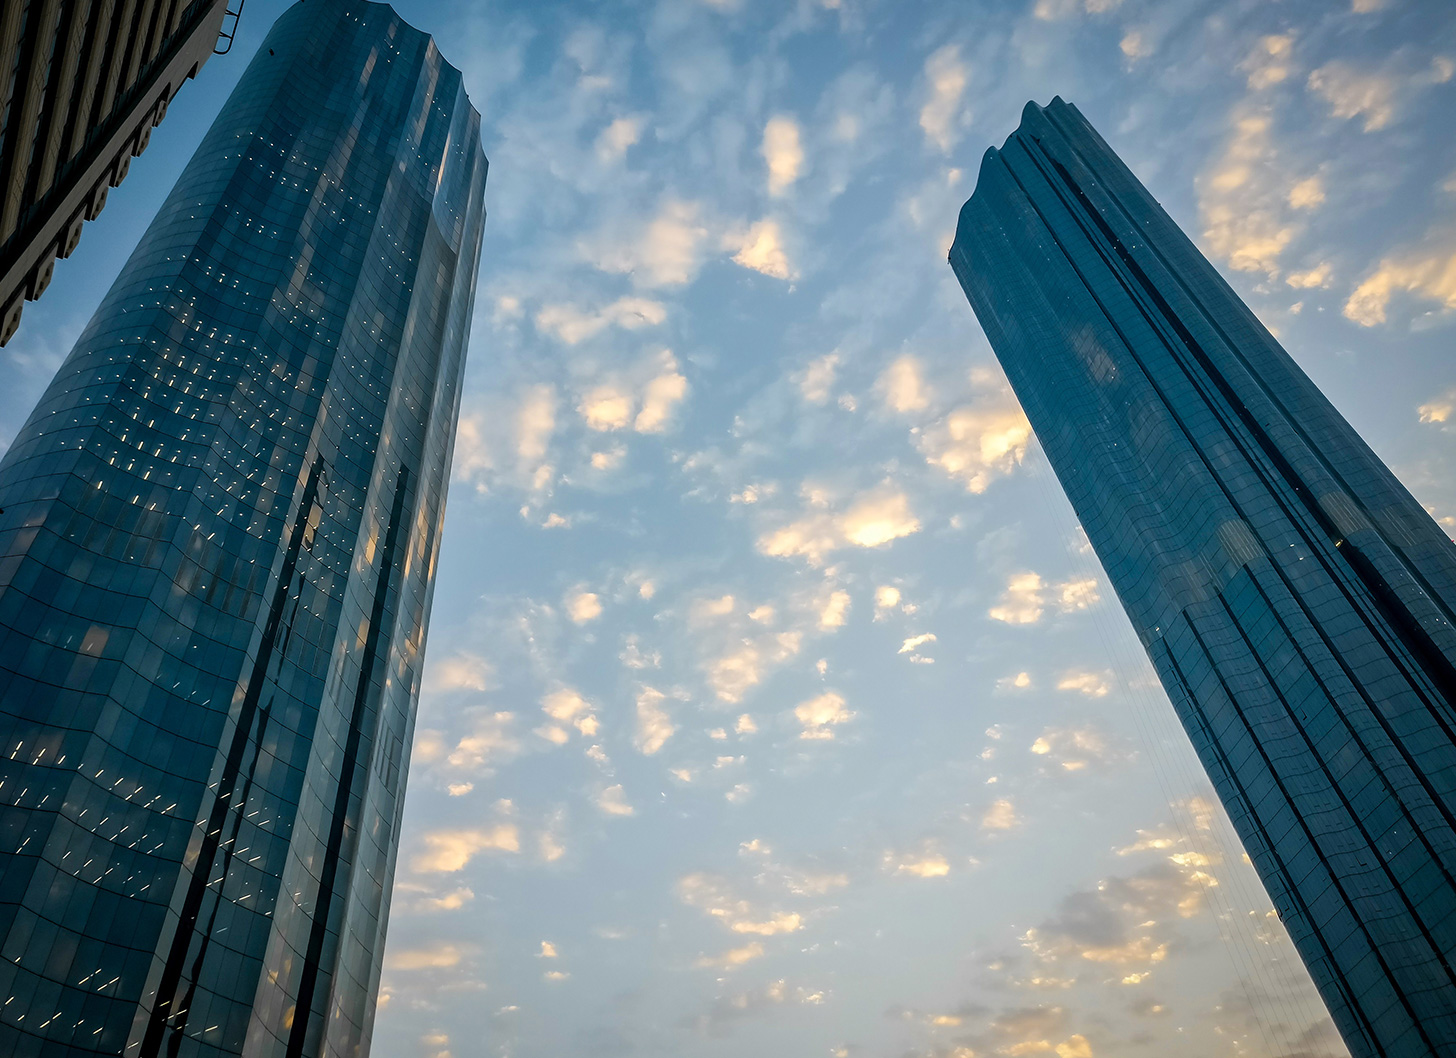 "خدمة" تفوز بسبعة عقود لإدارة المرافق في أنحاء دولة الإمارات العربية المتحدة